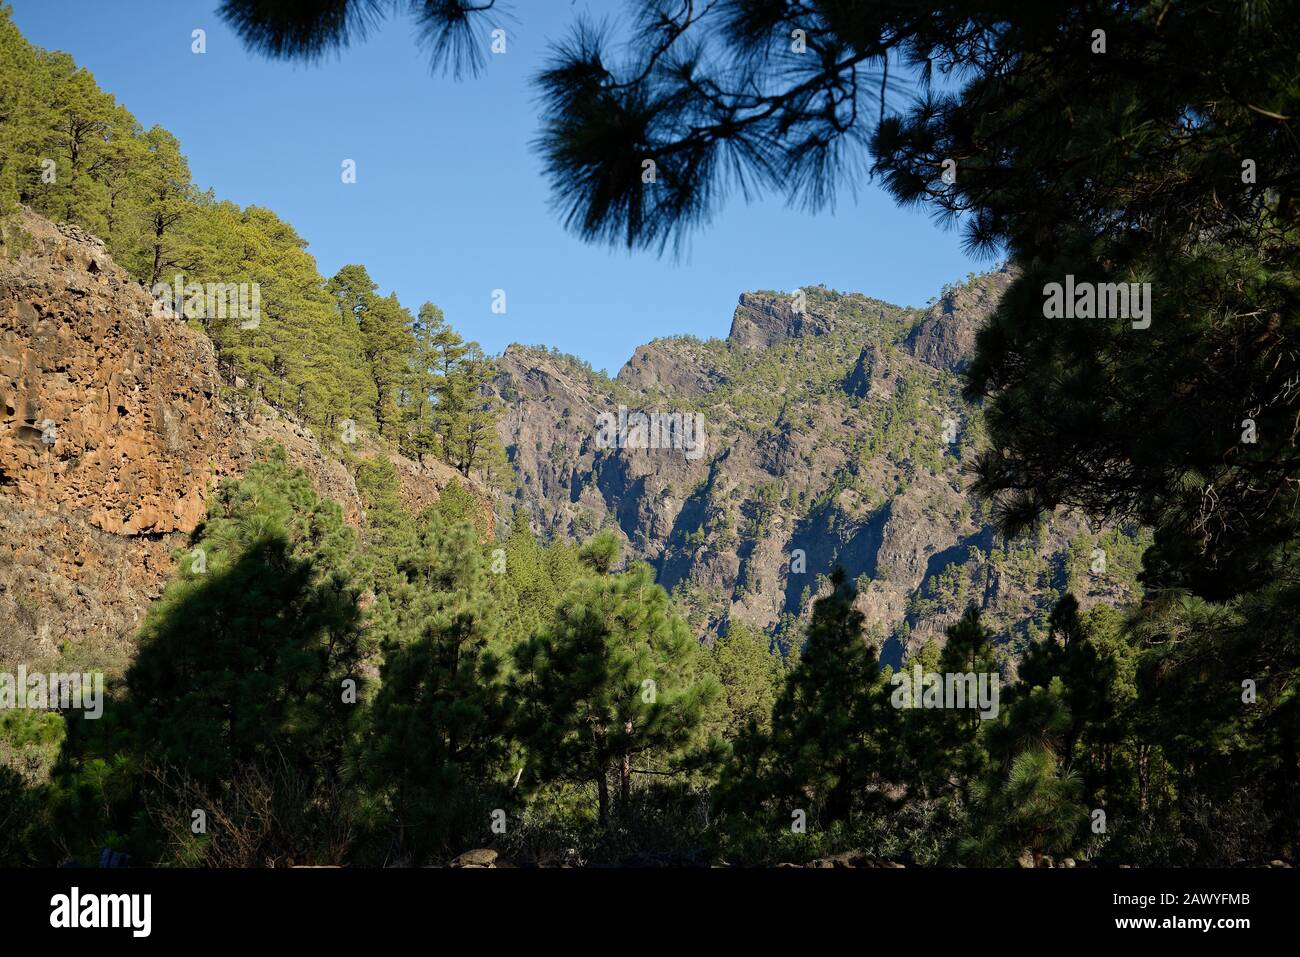 Pinete e rocce della Caldera de Taburiente, Isola di la Palma, Spagna. Caldera vulcanica ora coperta in verdi foreste di pini. Foto Stock